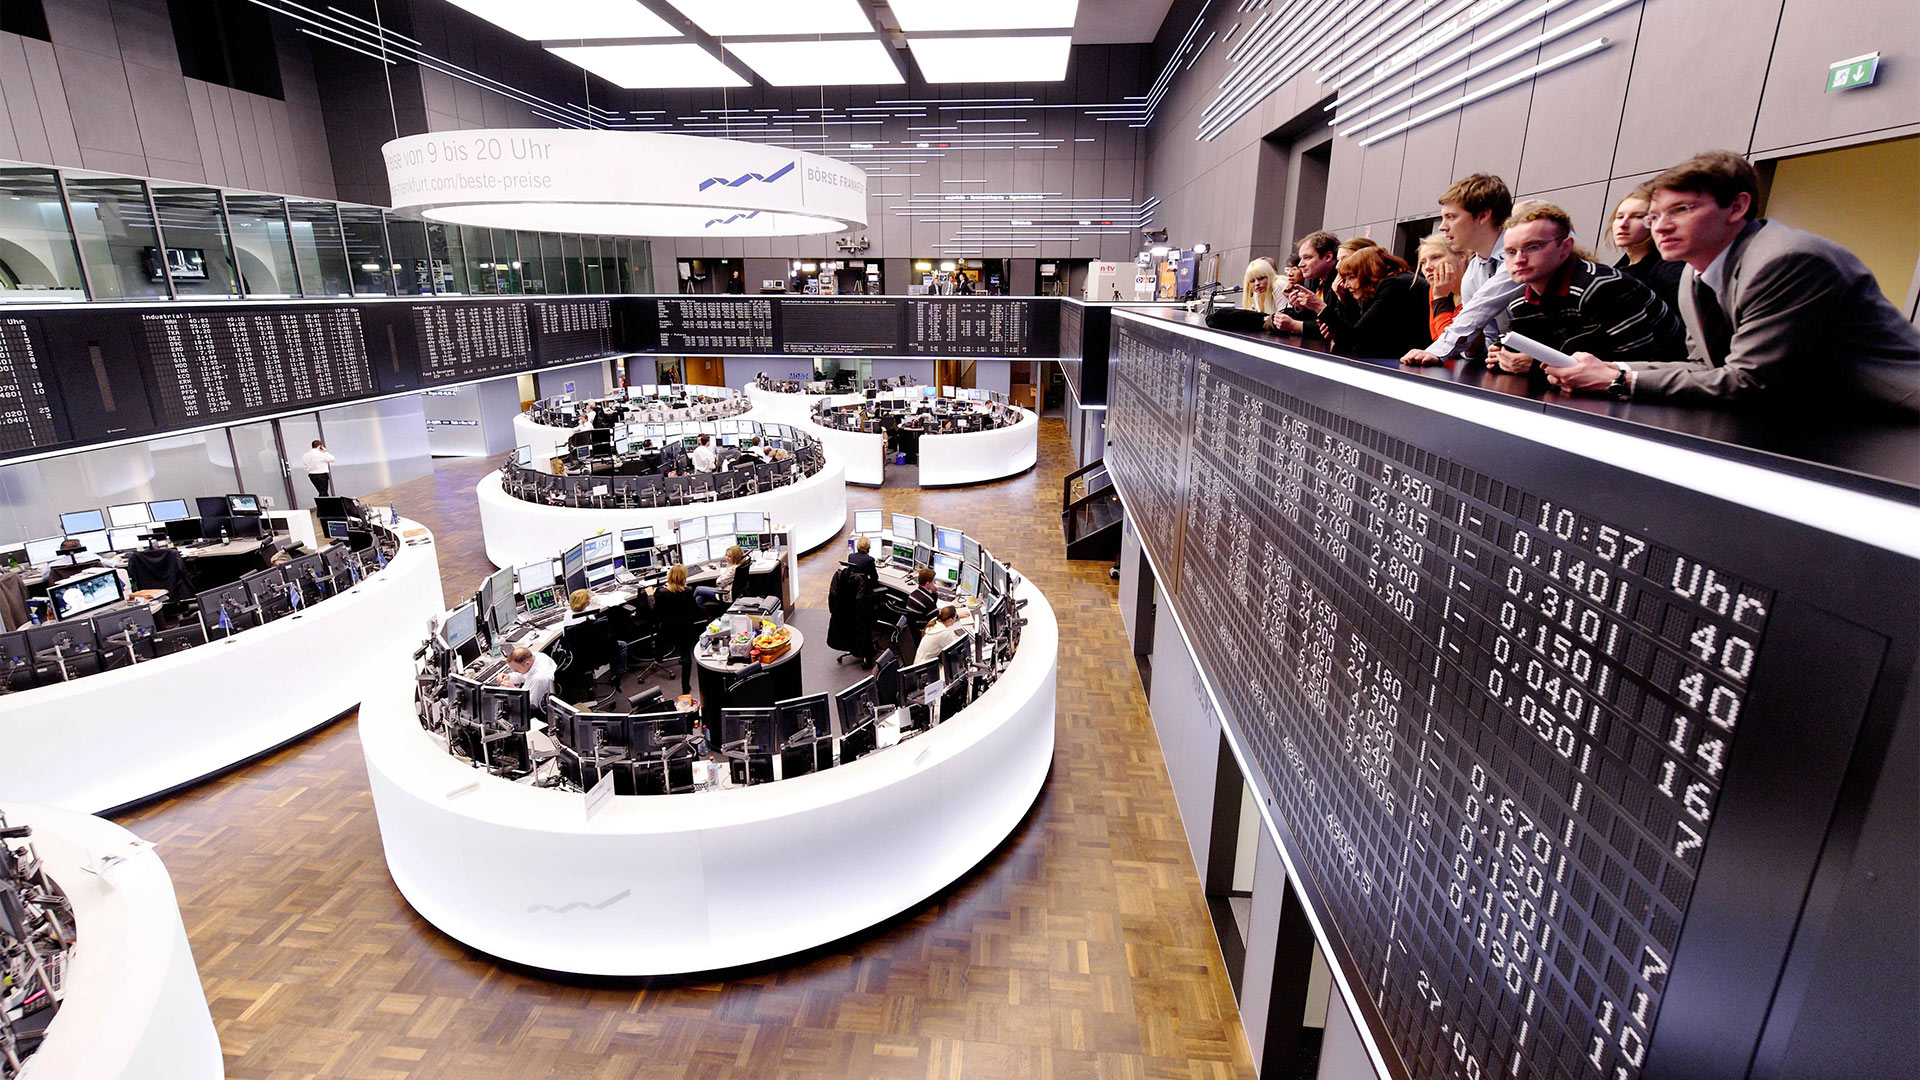 Besucher auf der Galerie des Handelssaals der Börse Frankfurt | 